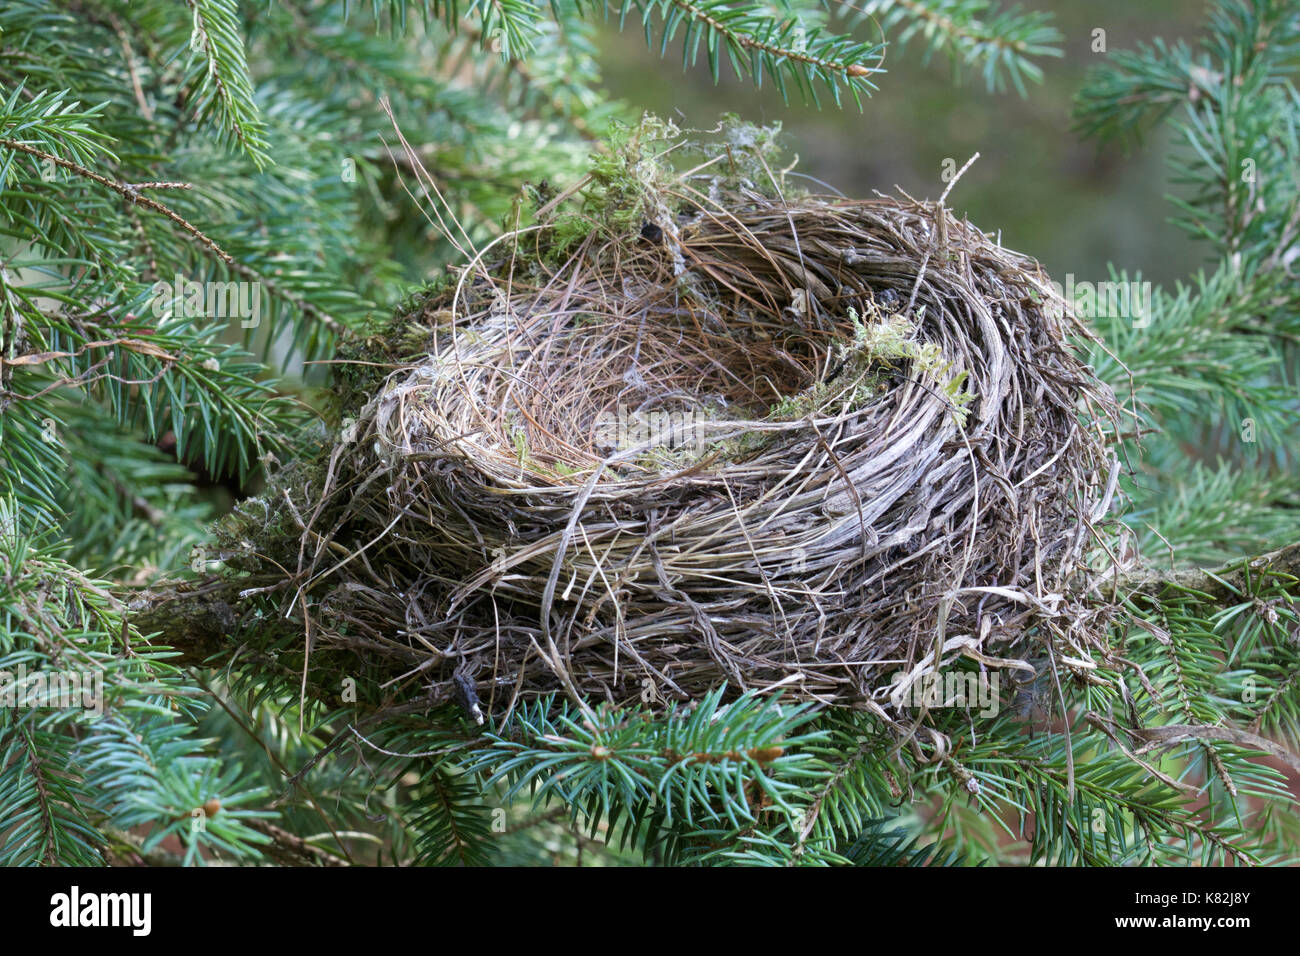 Das leere Nest. Das baby Vögel sind geschlüpft und weg geflogen. Leere Nester können Eltern traurig fühlen, wenn ihre Kinder aufwachsen und das Haus der Familie verlassen. Stockfoto